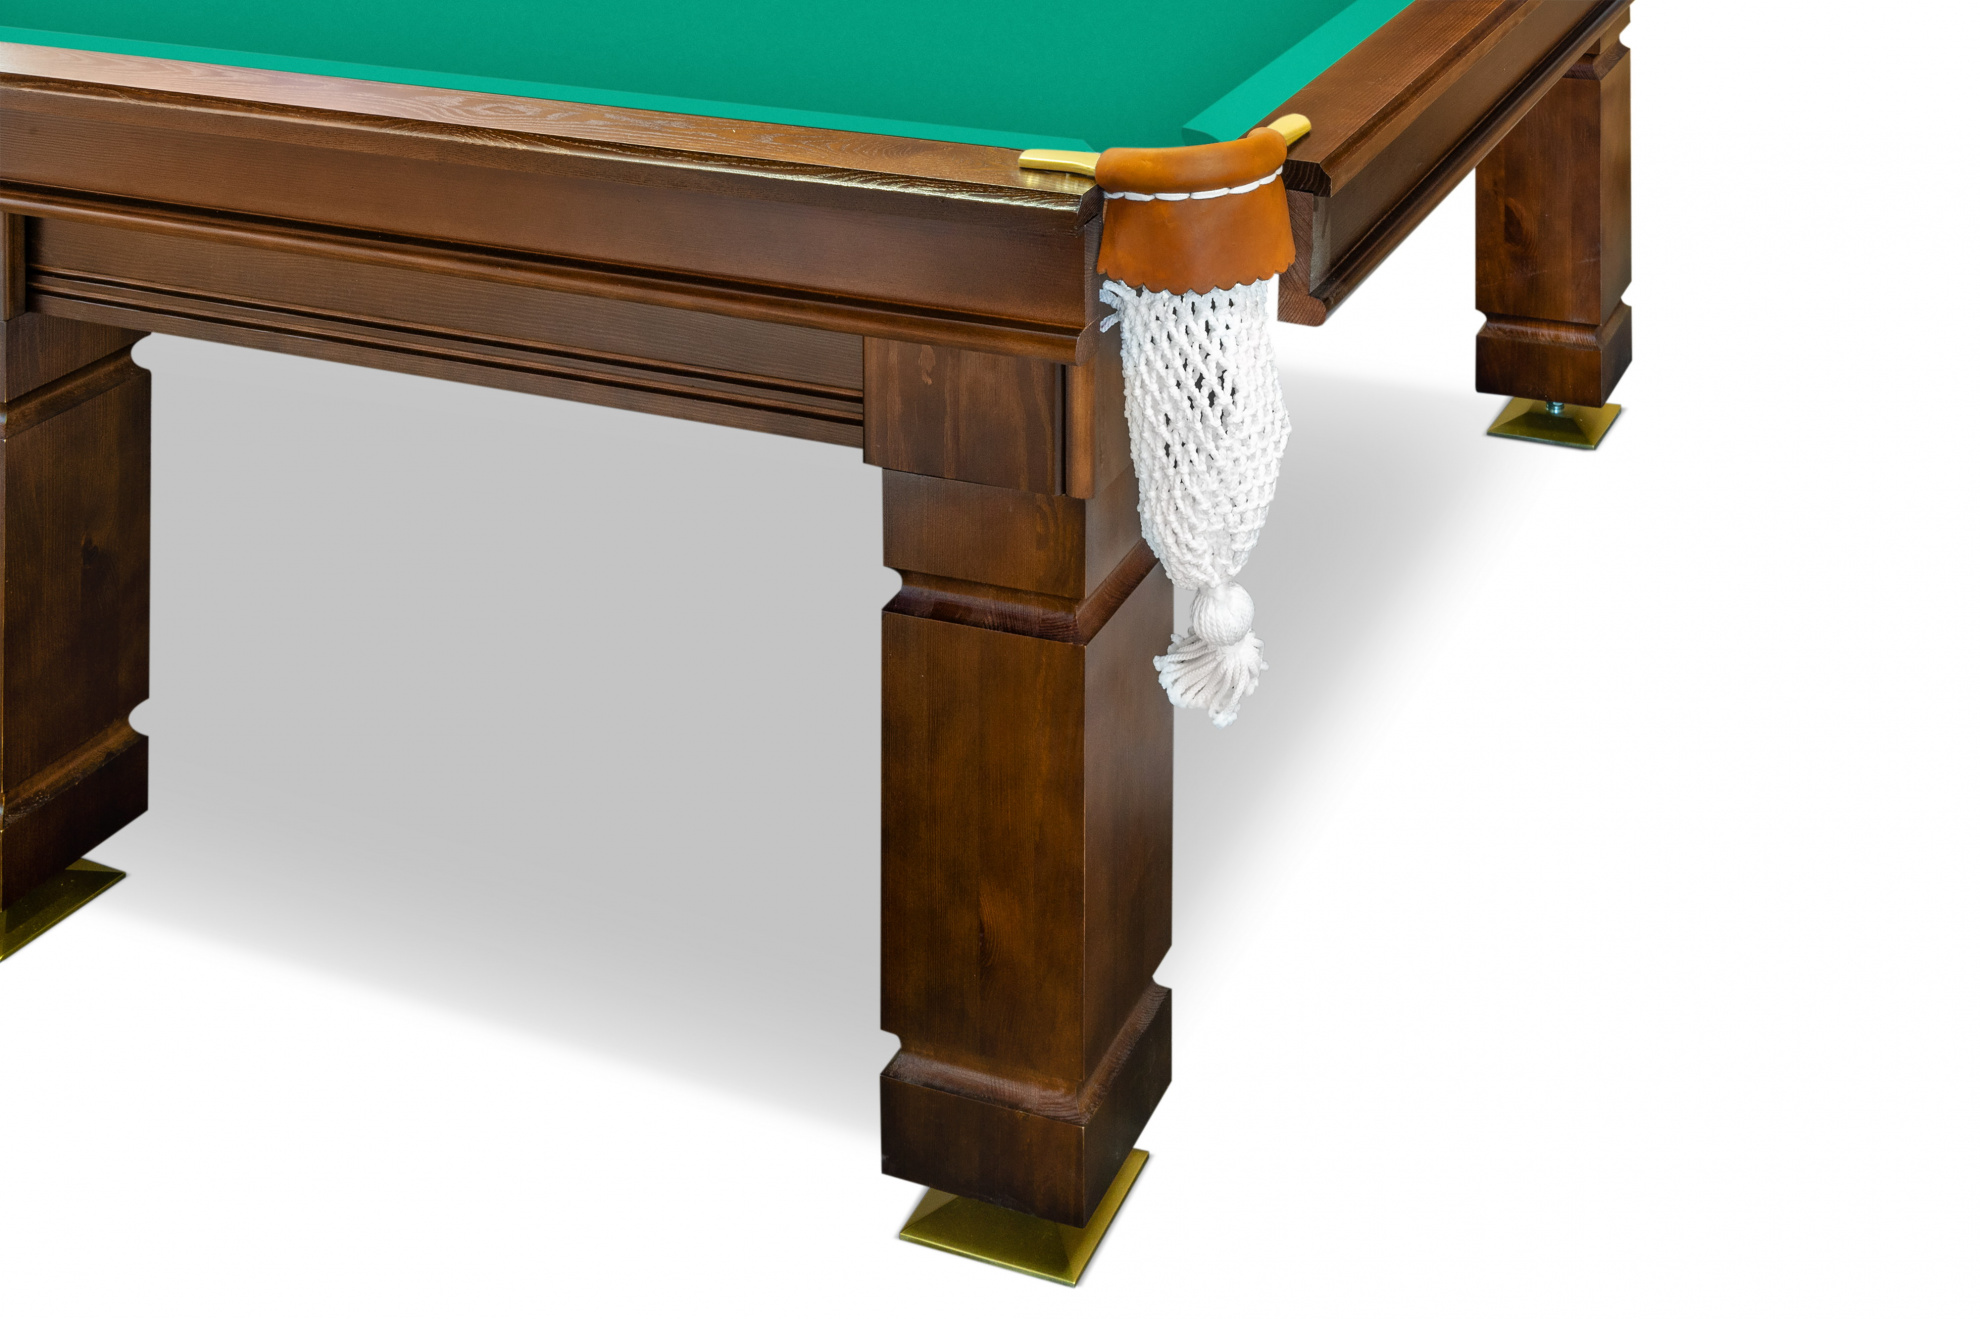 Бильярдный стол для русского бильярда Weekend Billiard Hardy (12 футов, сланец 25мм) коричневый, борт ясень